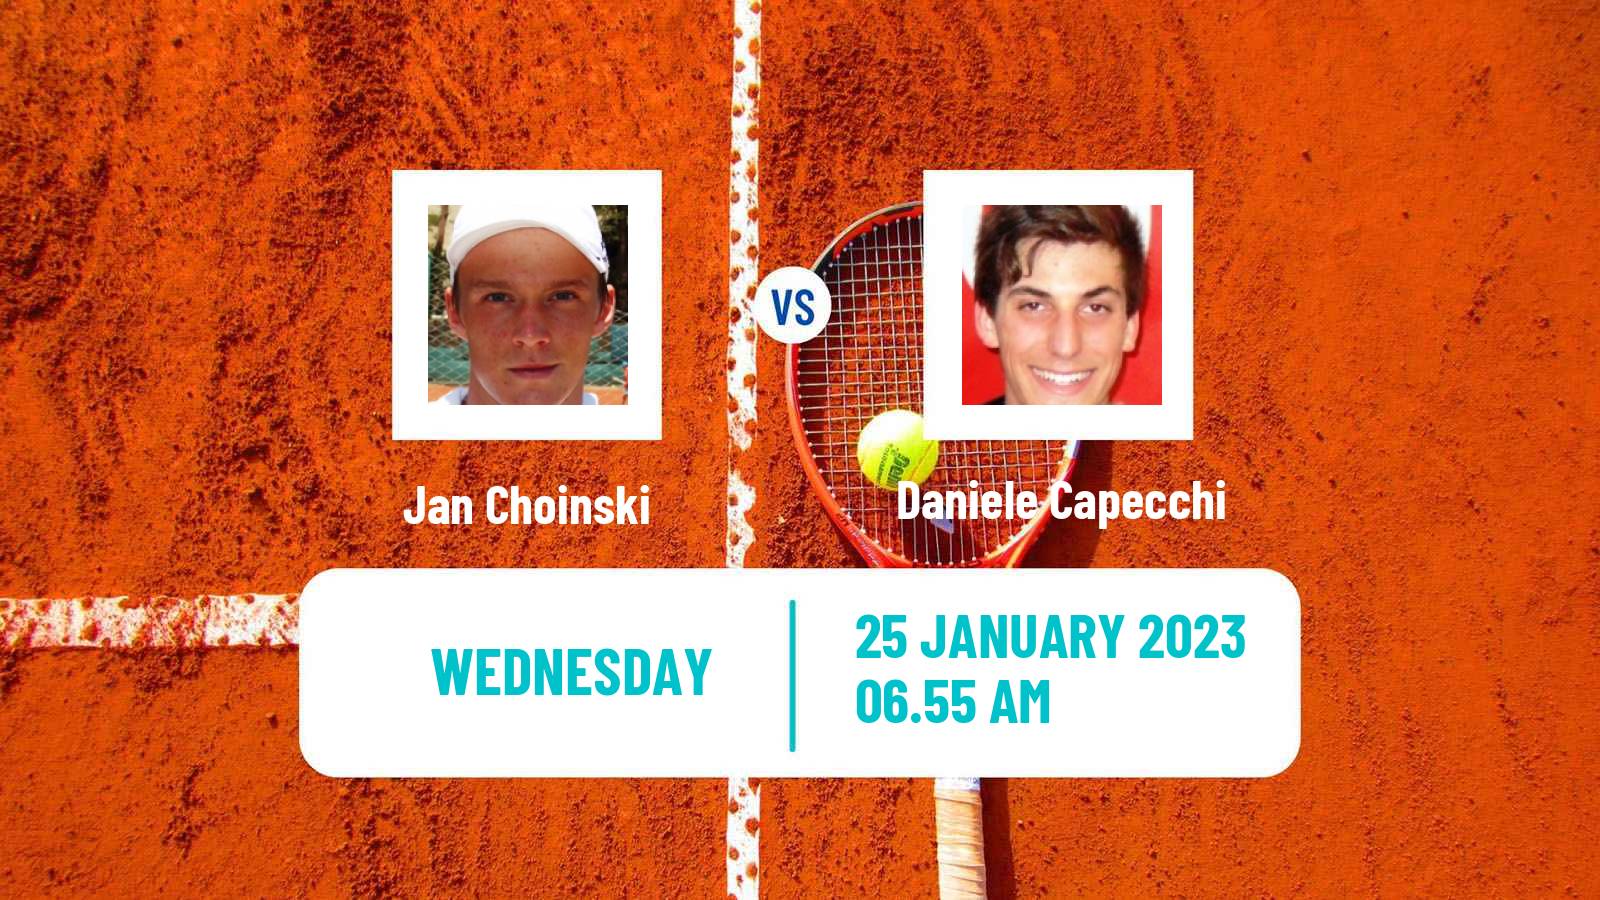 Tennis ITF Tournaments Jan Choinski - Daniele Capecchi